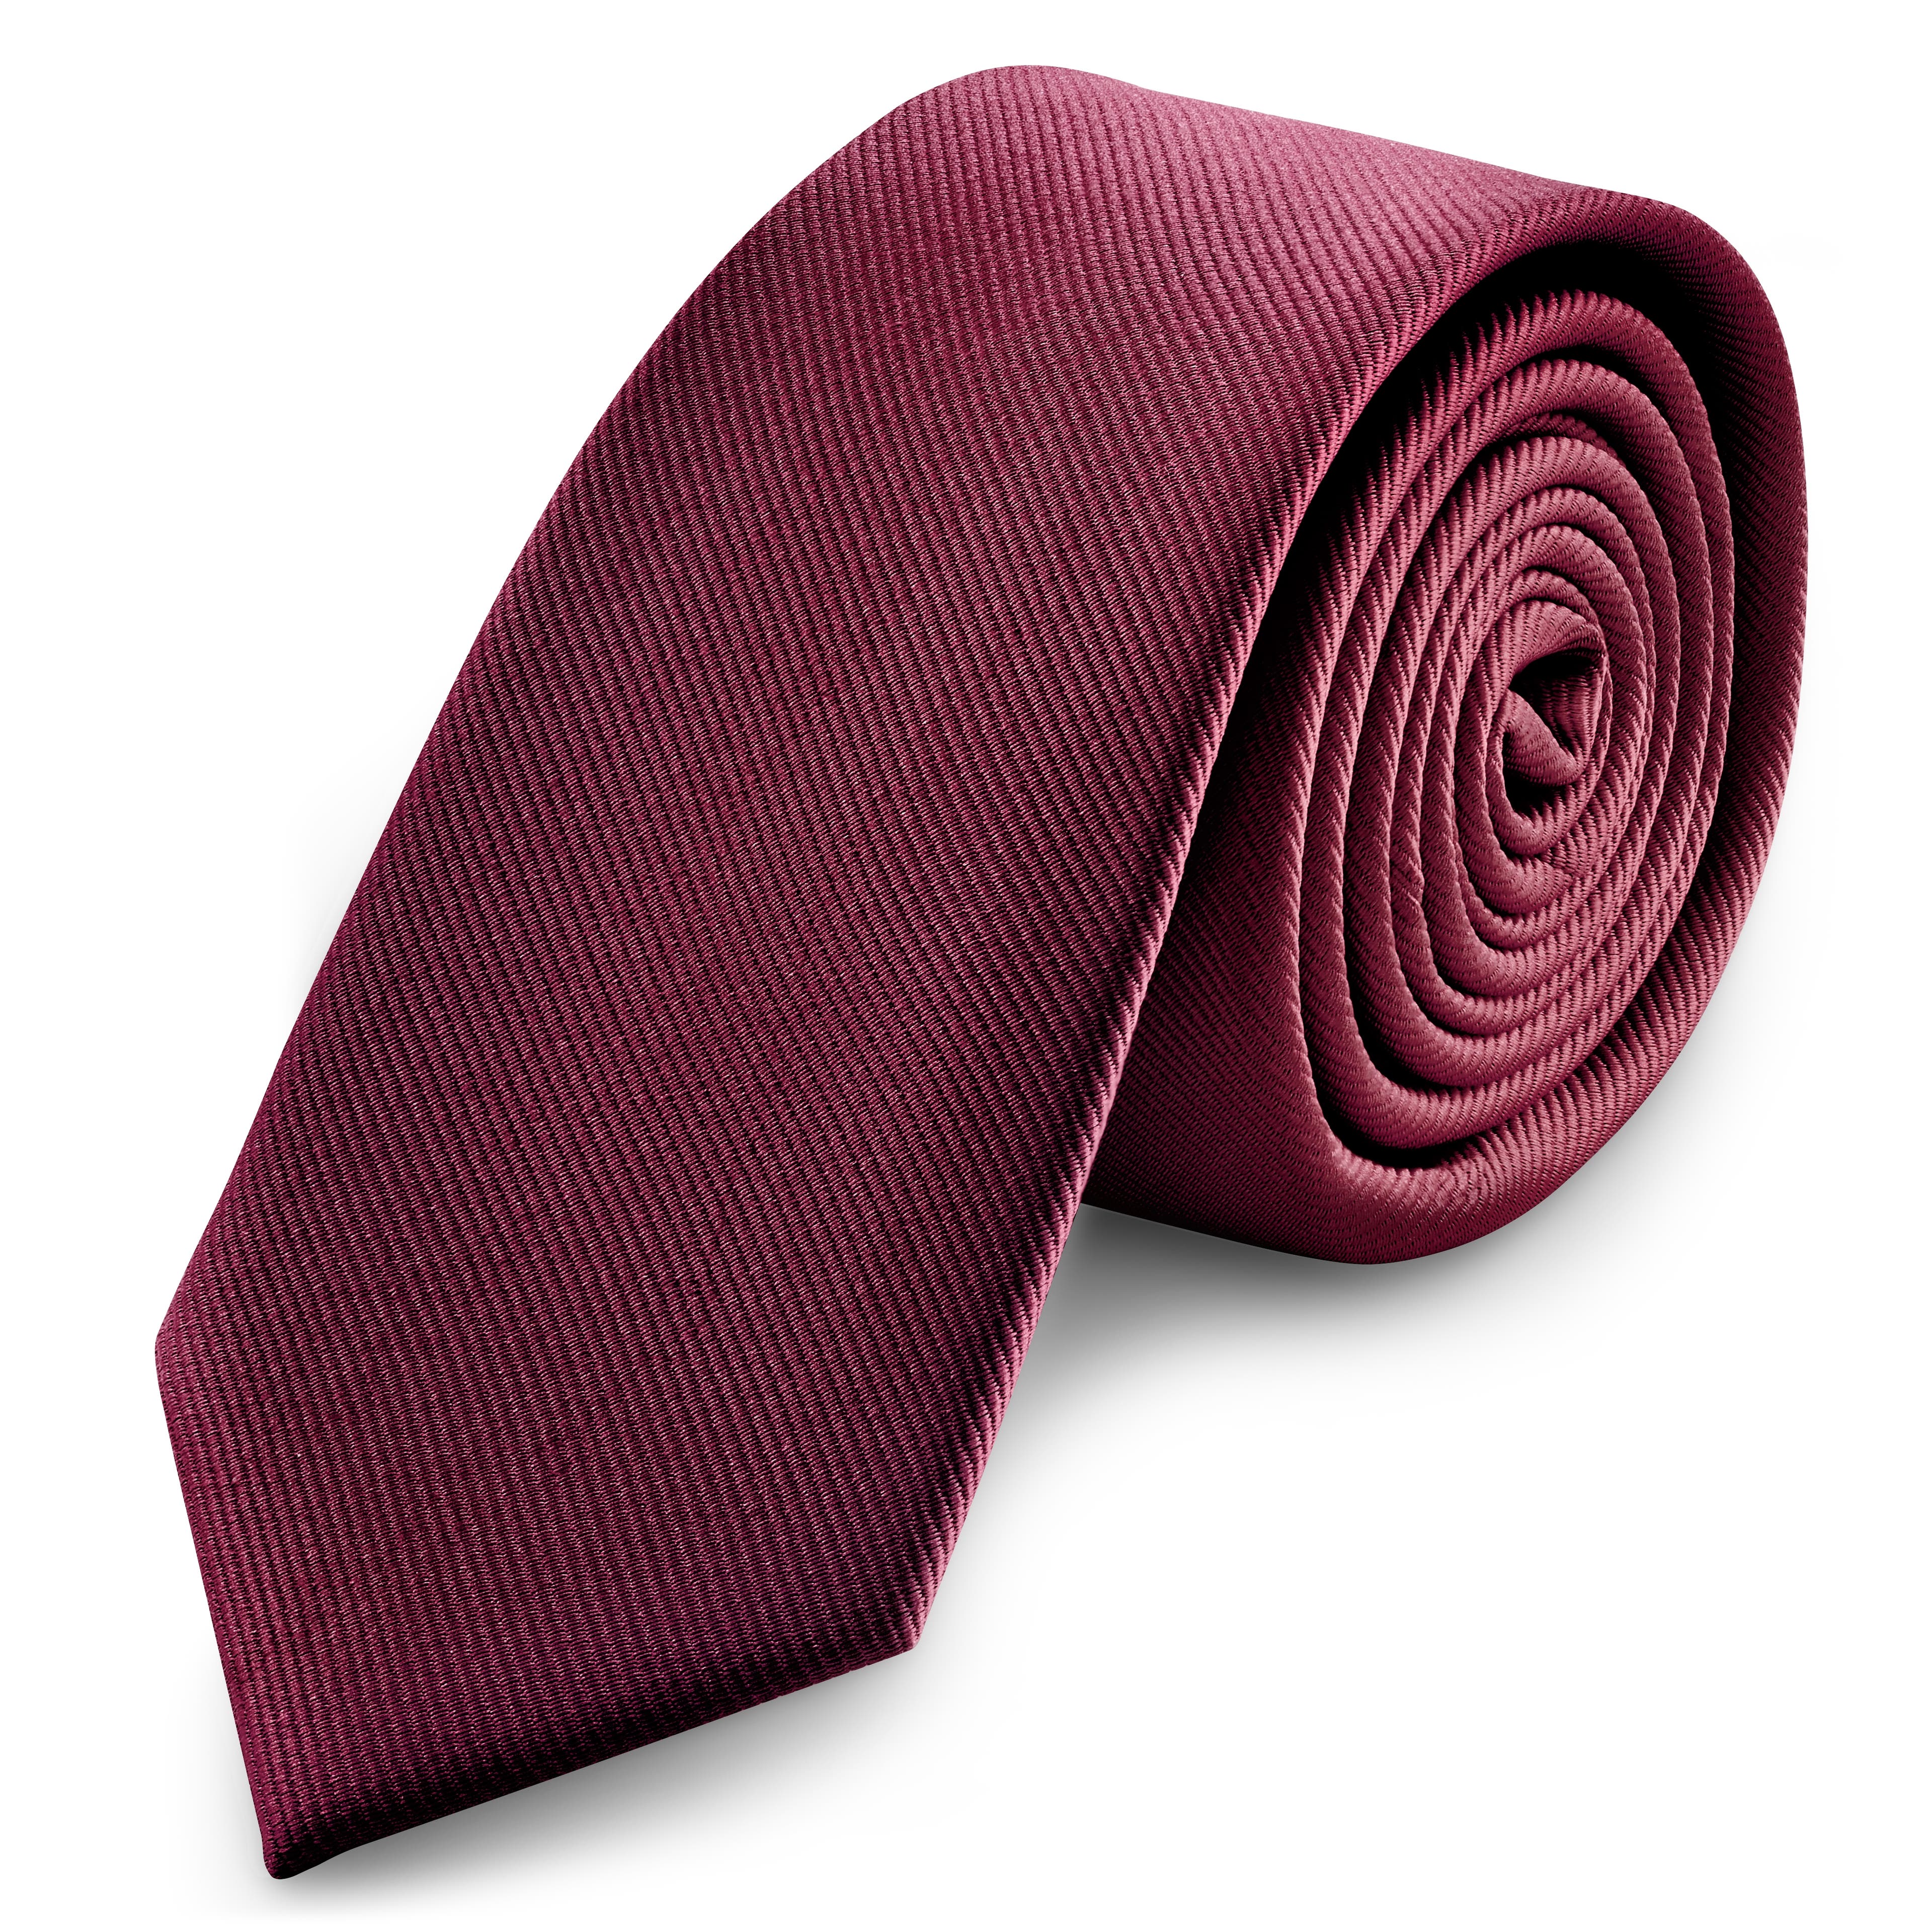 Cravate slim en gros grain de 6 cm de couleur bourgogne